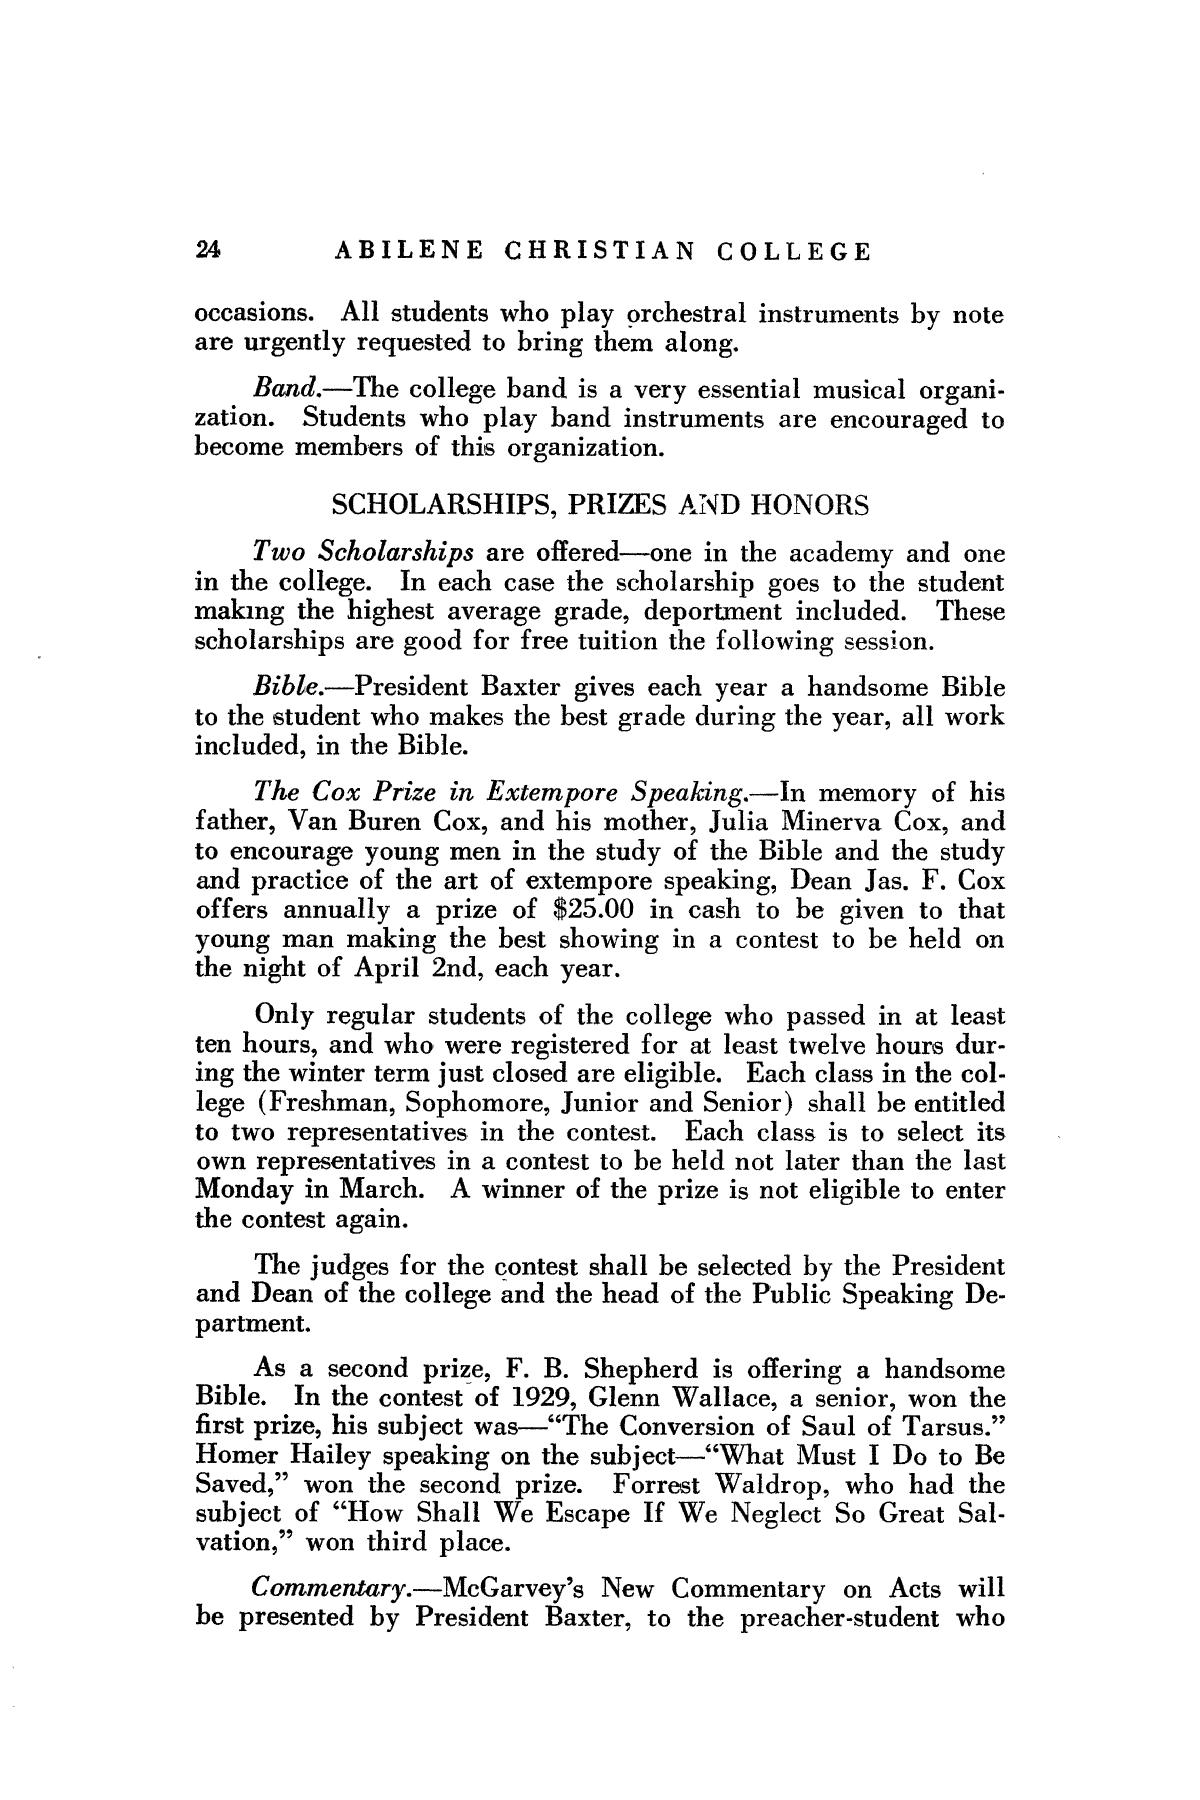 Catalog of Abilene Christian College, 1929-1930
                                                
                                                    24
                                                